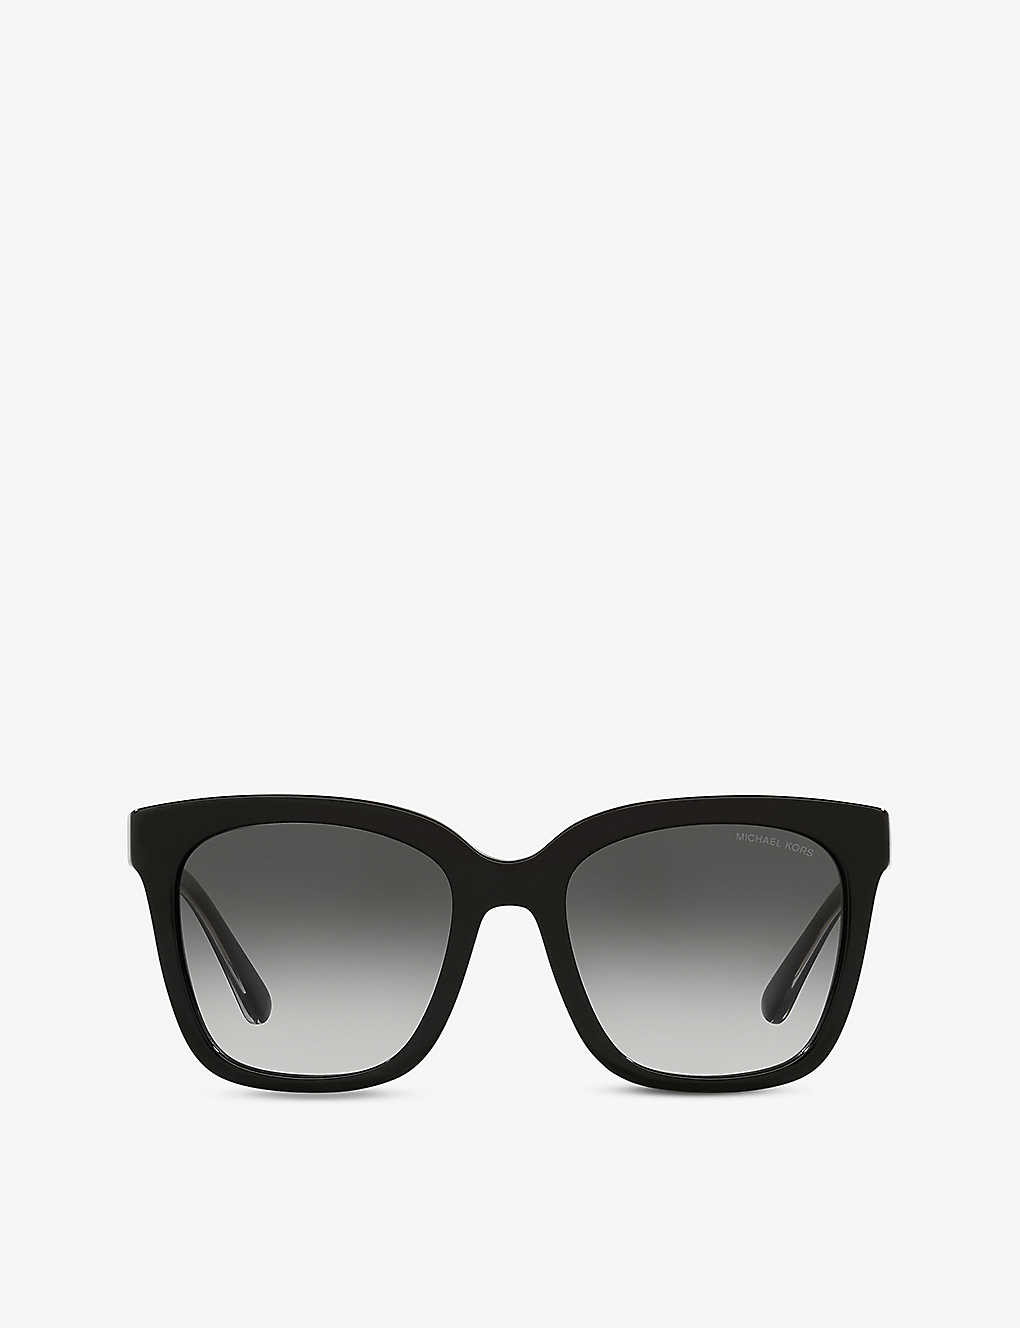 Michael Kors San Marino Sunglasses In Brown